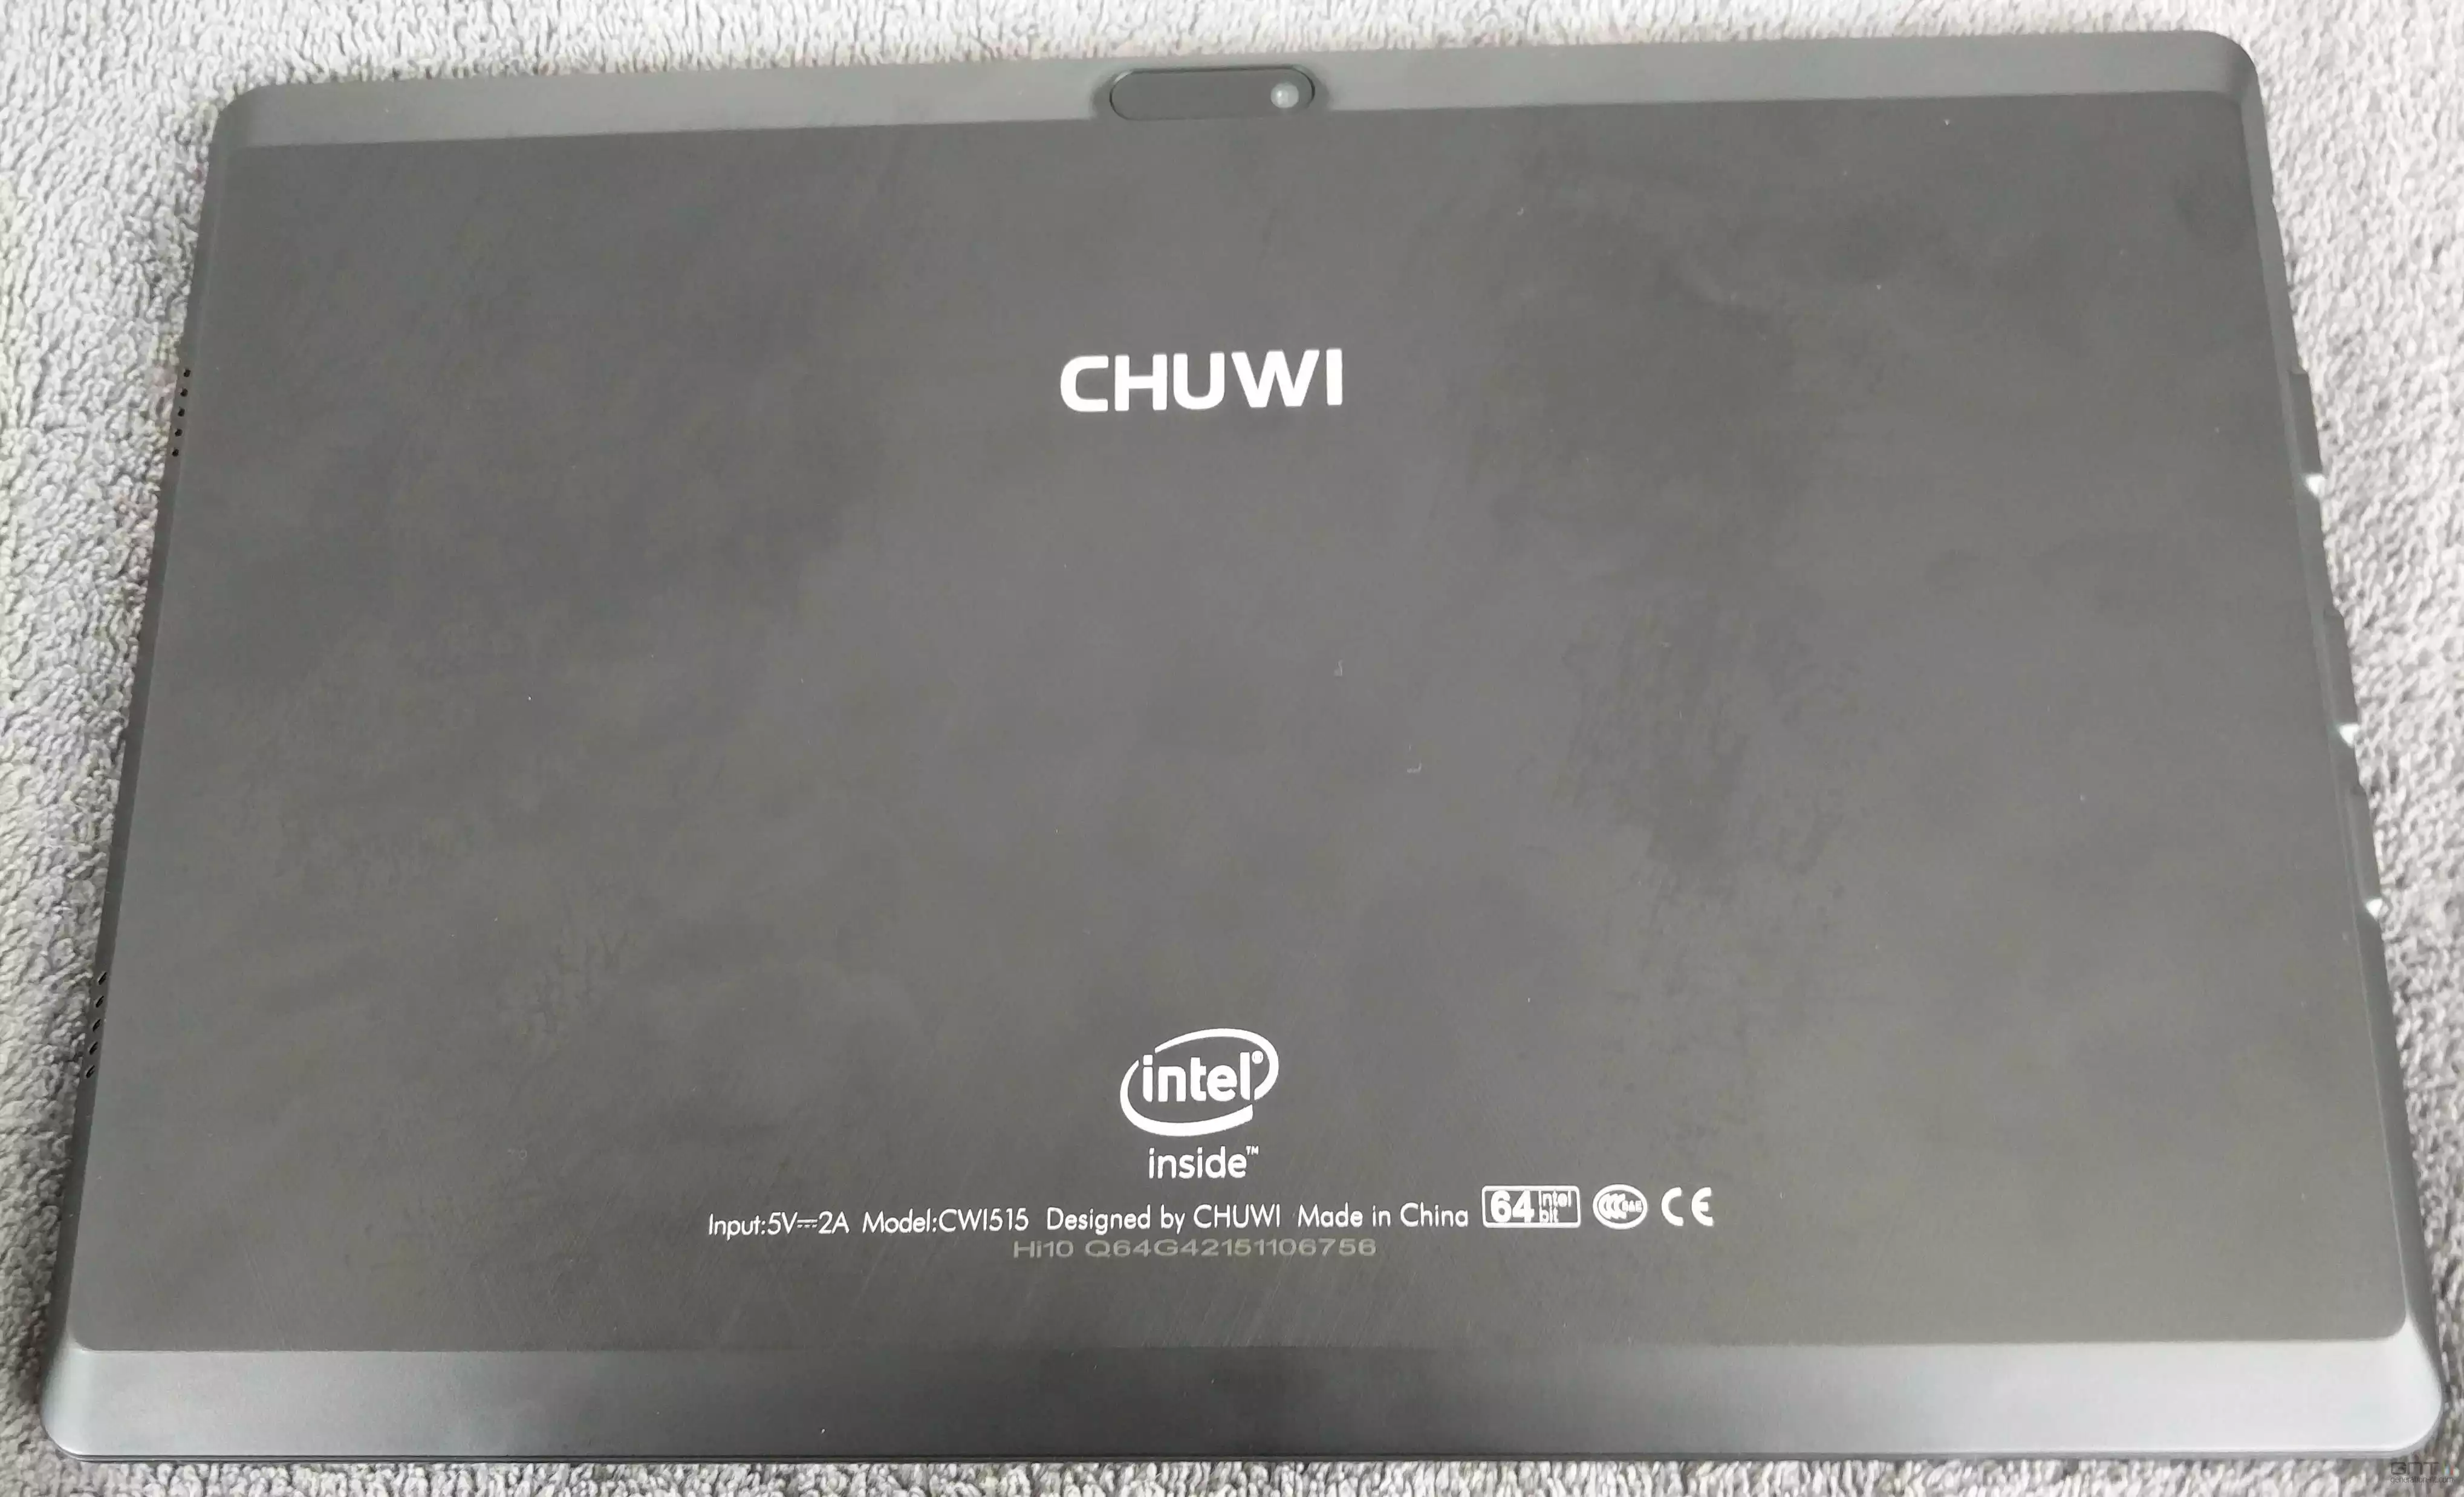 Chuwi Hi10 Air : notre test sur cette tablette Windows 10 à moins